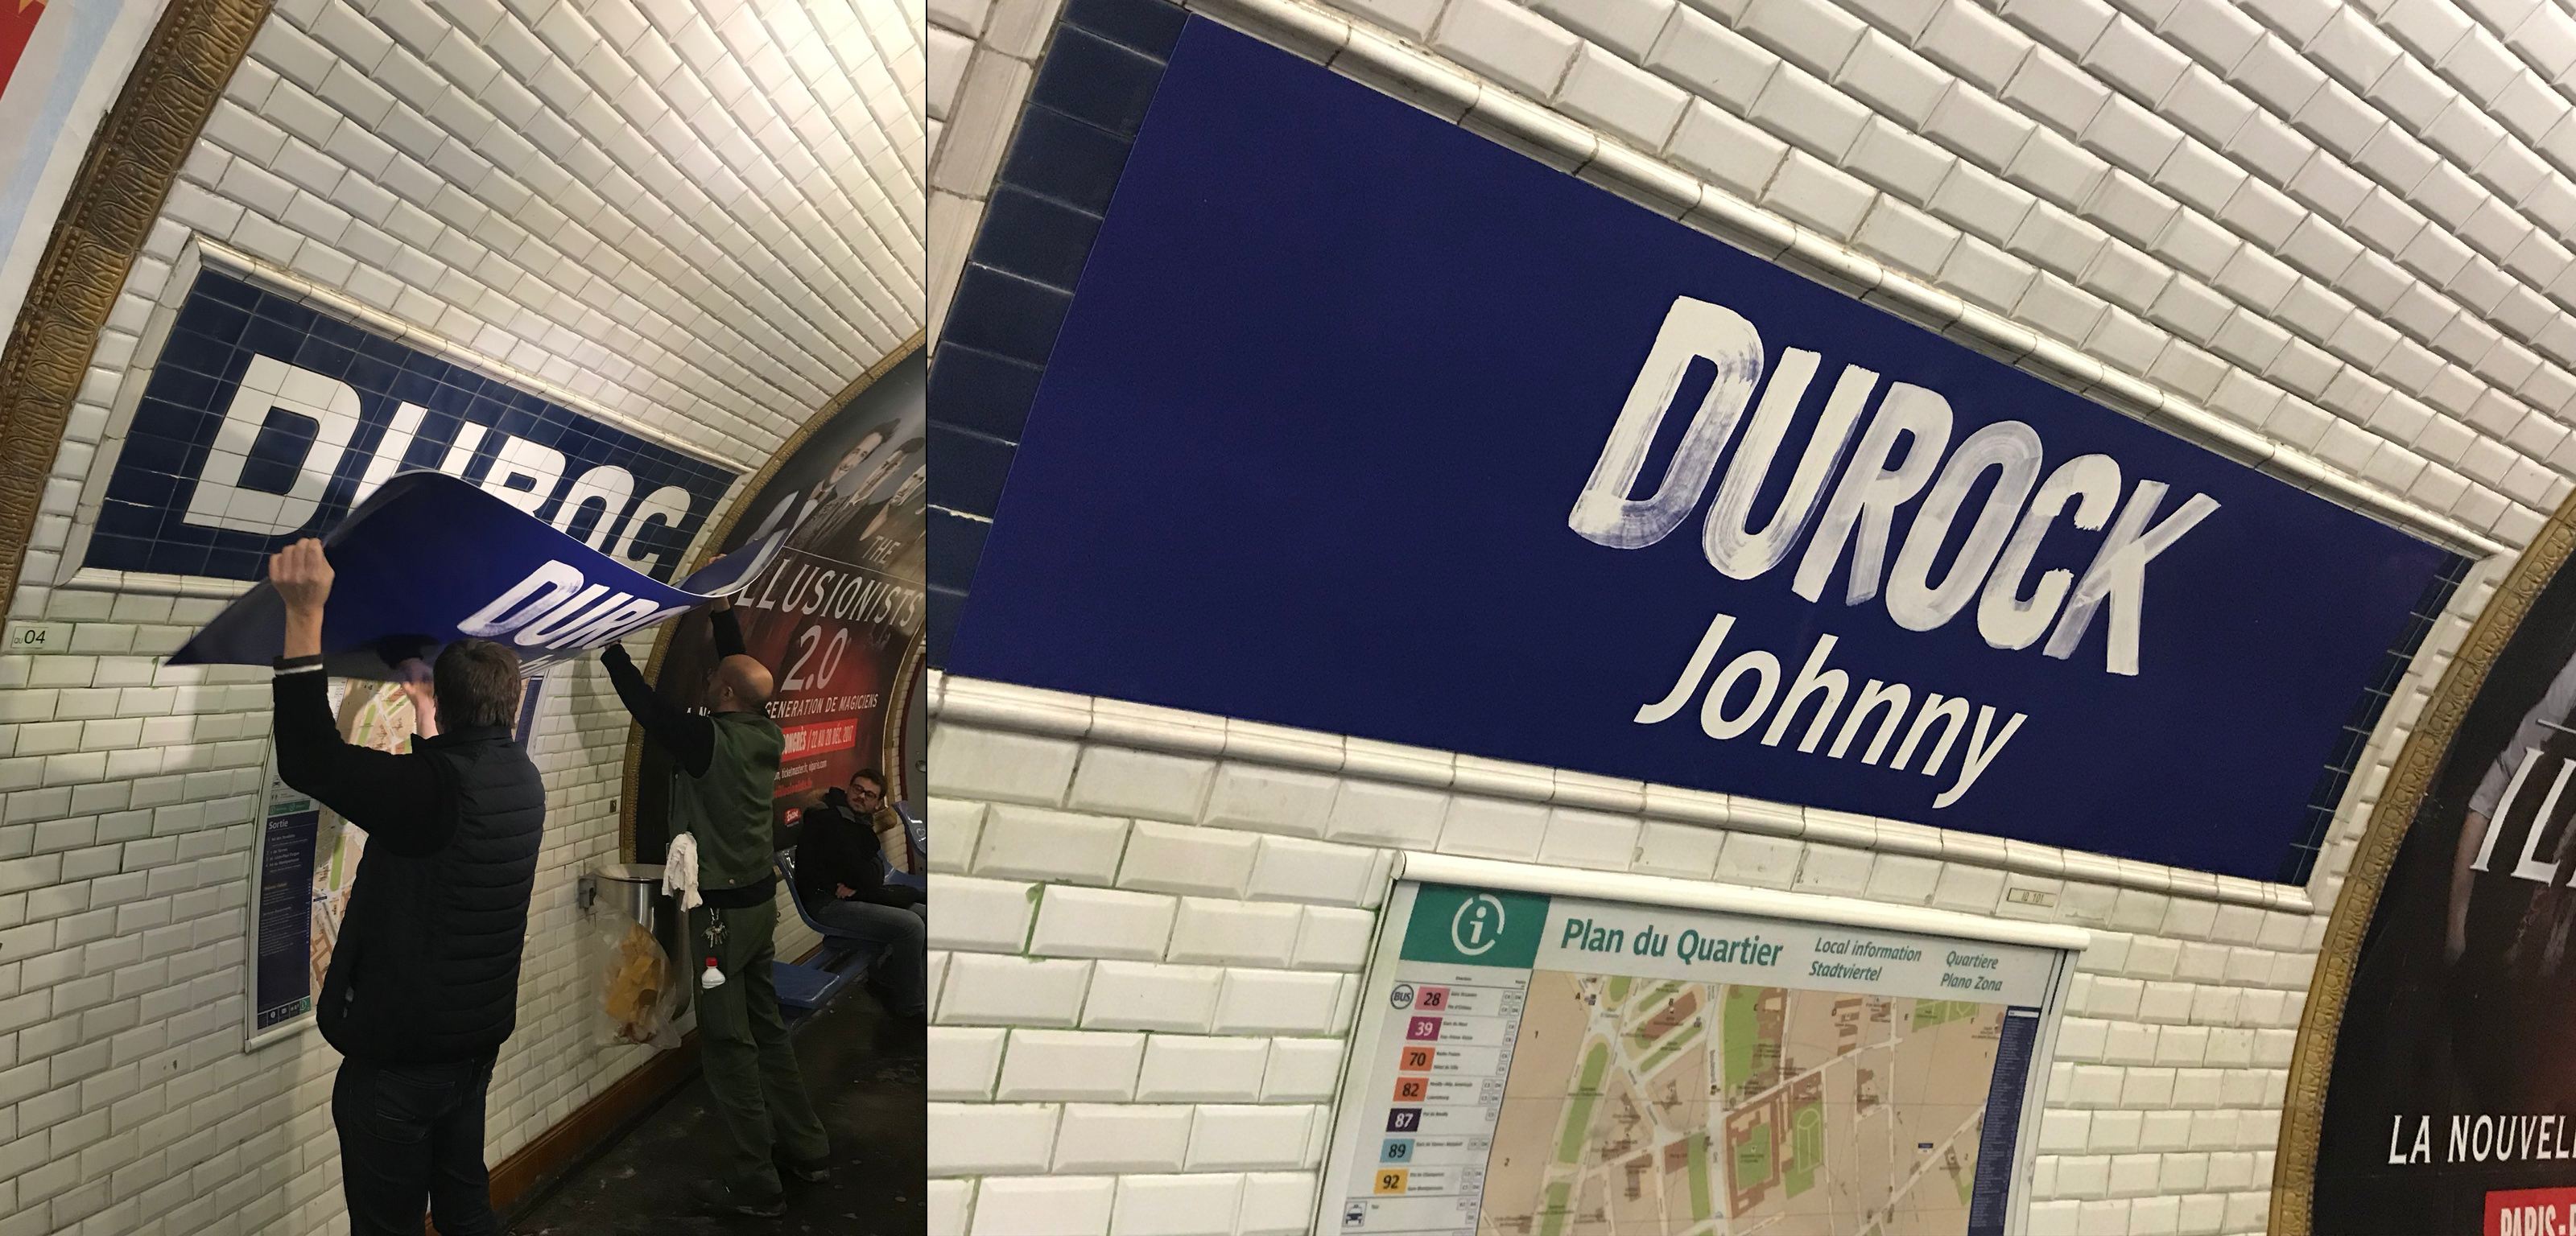 La station de métro Duroc débaptisée en hommage à Johnny Hallyday